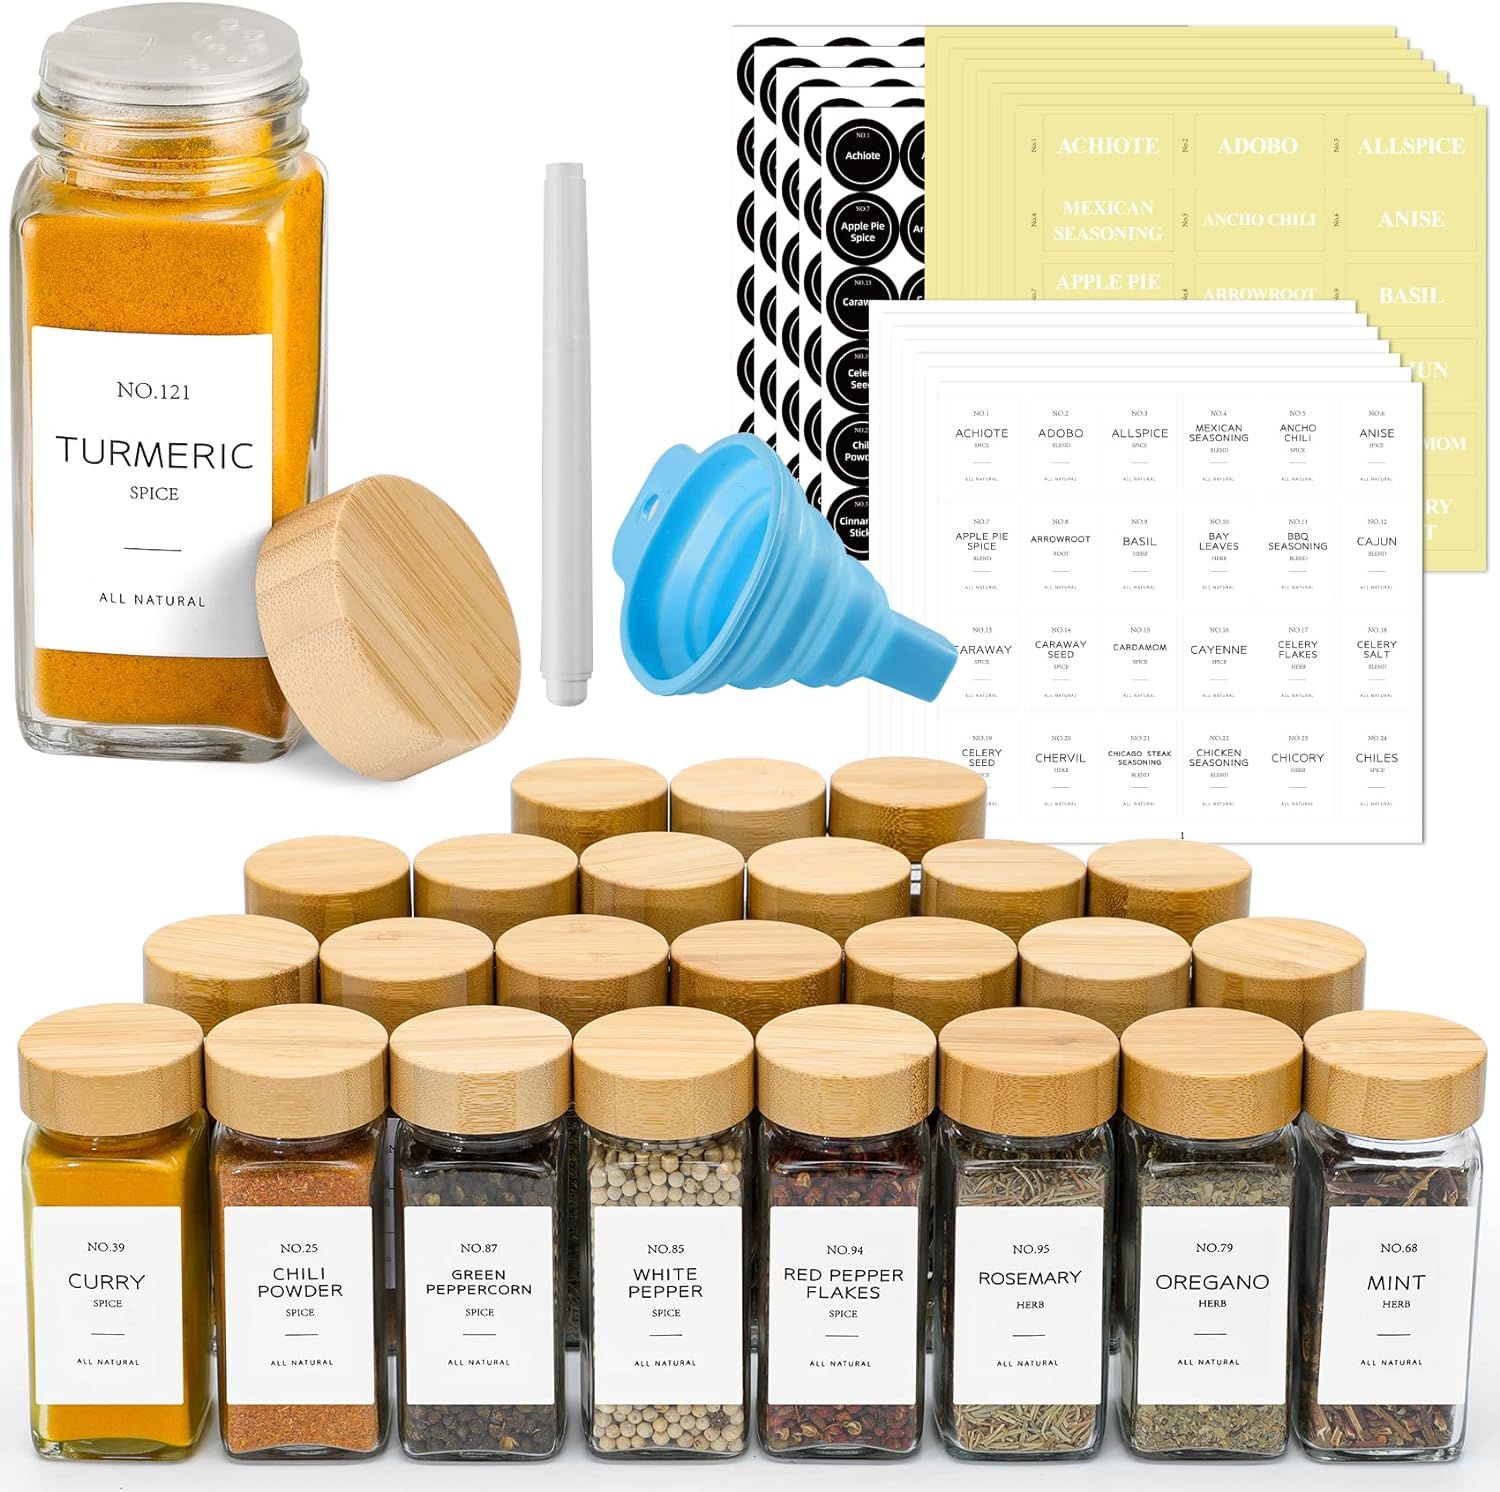 NETANY 24 Pcs Spice Jars with Labels - 4 oz Glass Spice Jars with Bamboo Lids, Minimalist Farmhou... | Amazon (US)